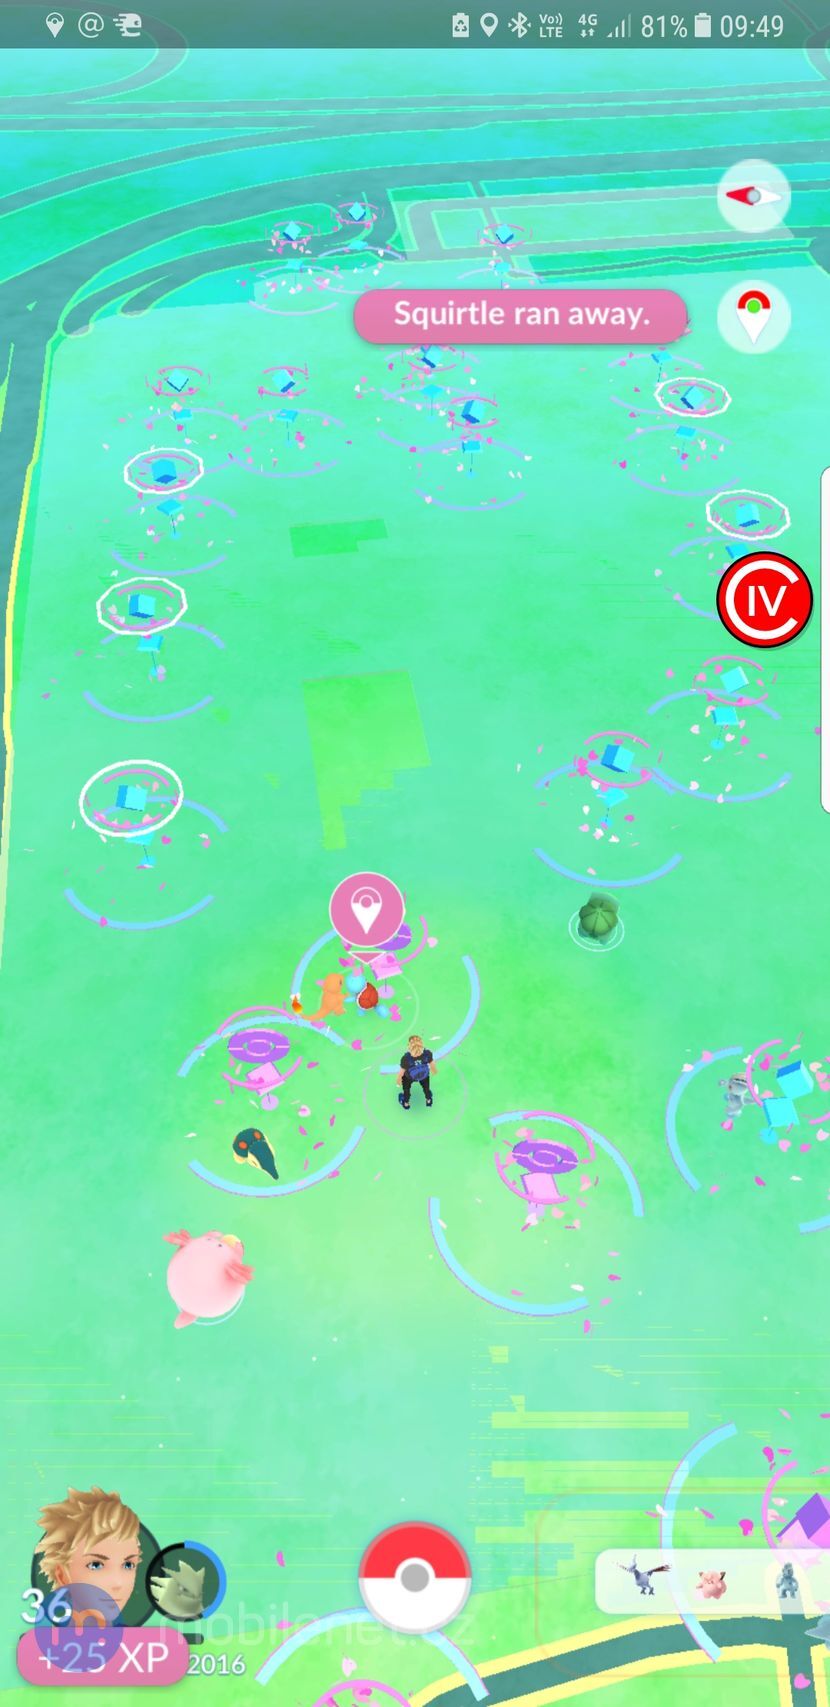 Pokémon GO Safari zone event v Praze